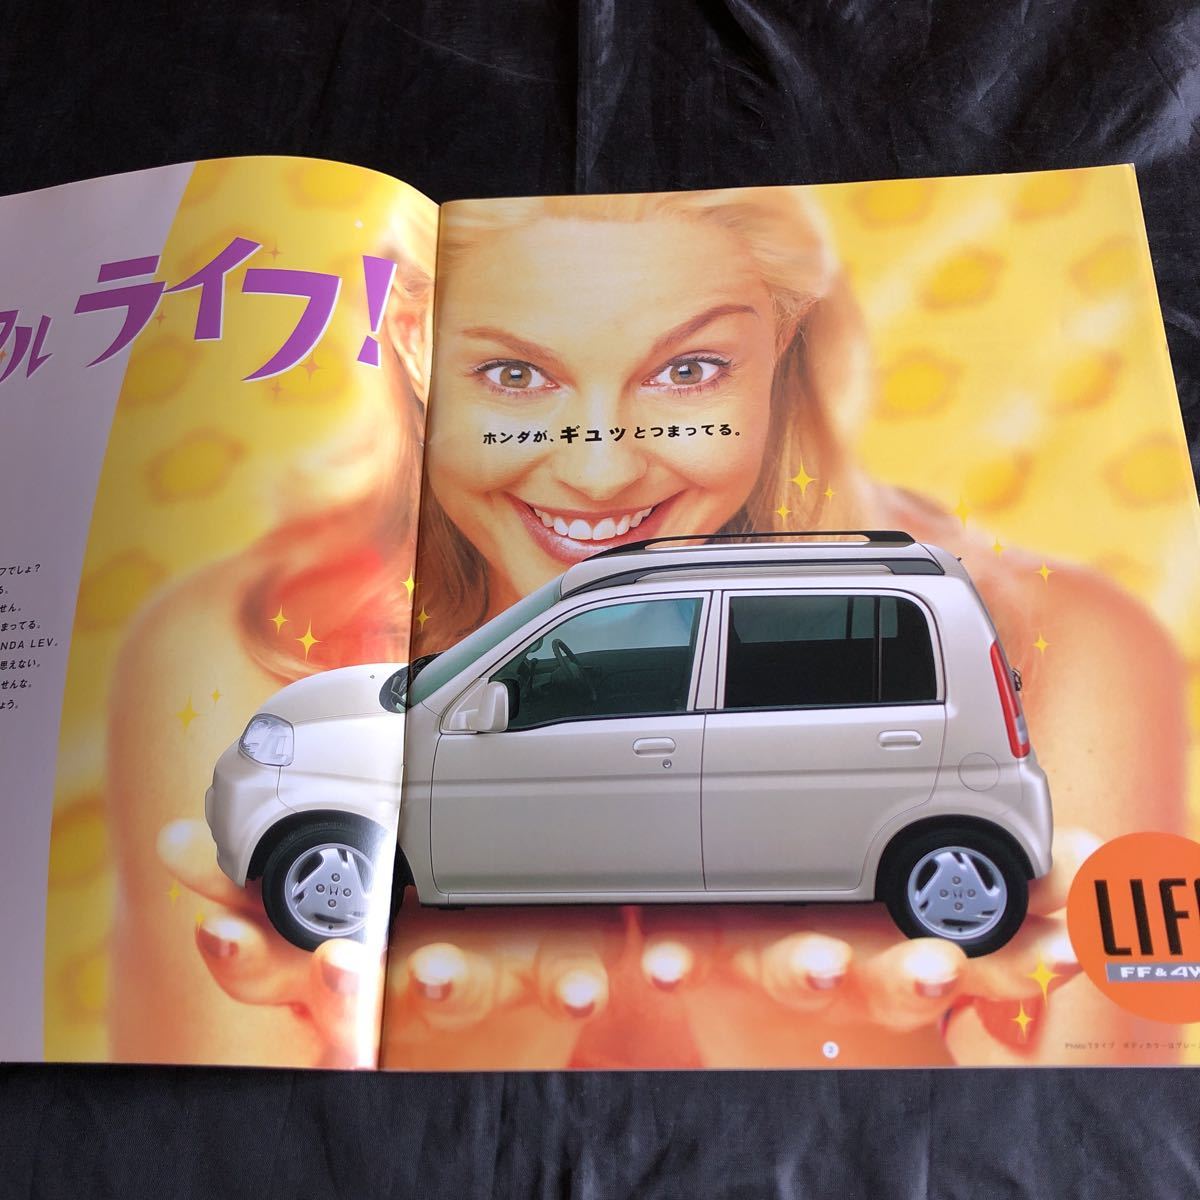 NA1742N216 Honda LIFE FF&4WD catalog 1999 year 4 month 